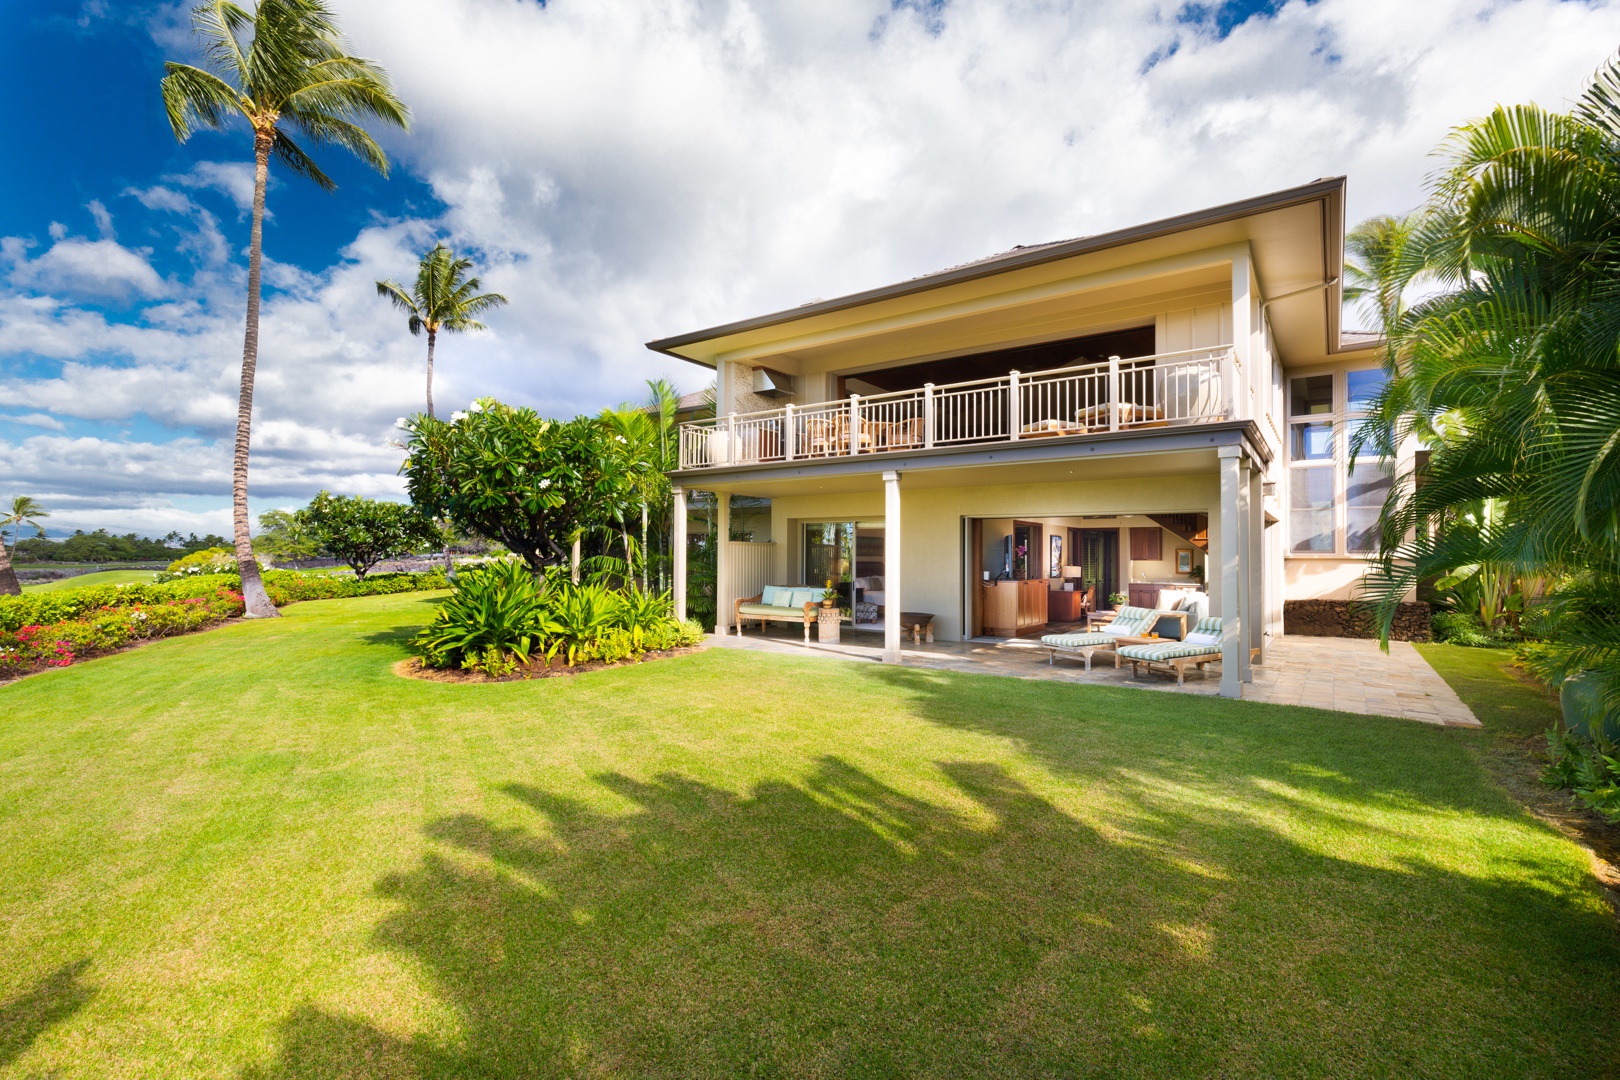 Kailua Kona Vacation Rentals, 3BD Ke Alaula Villa (210A) at Four Seasons Resort at Hualalai - Back of this stunning villa showcasing upper and lower lanais and large private grassy lawn.